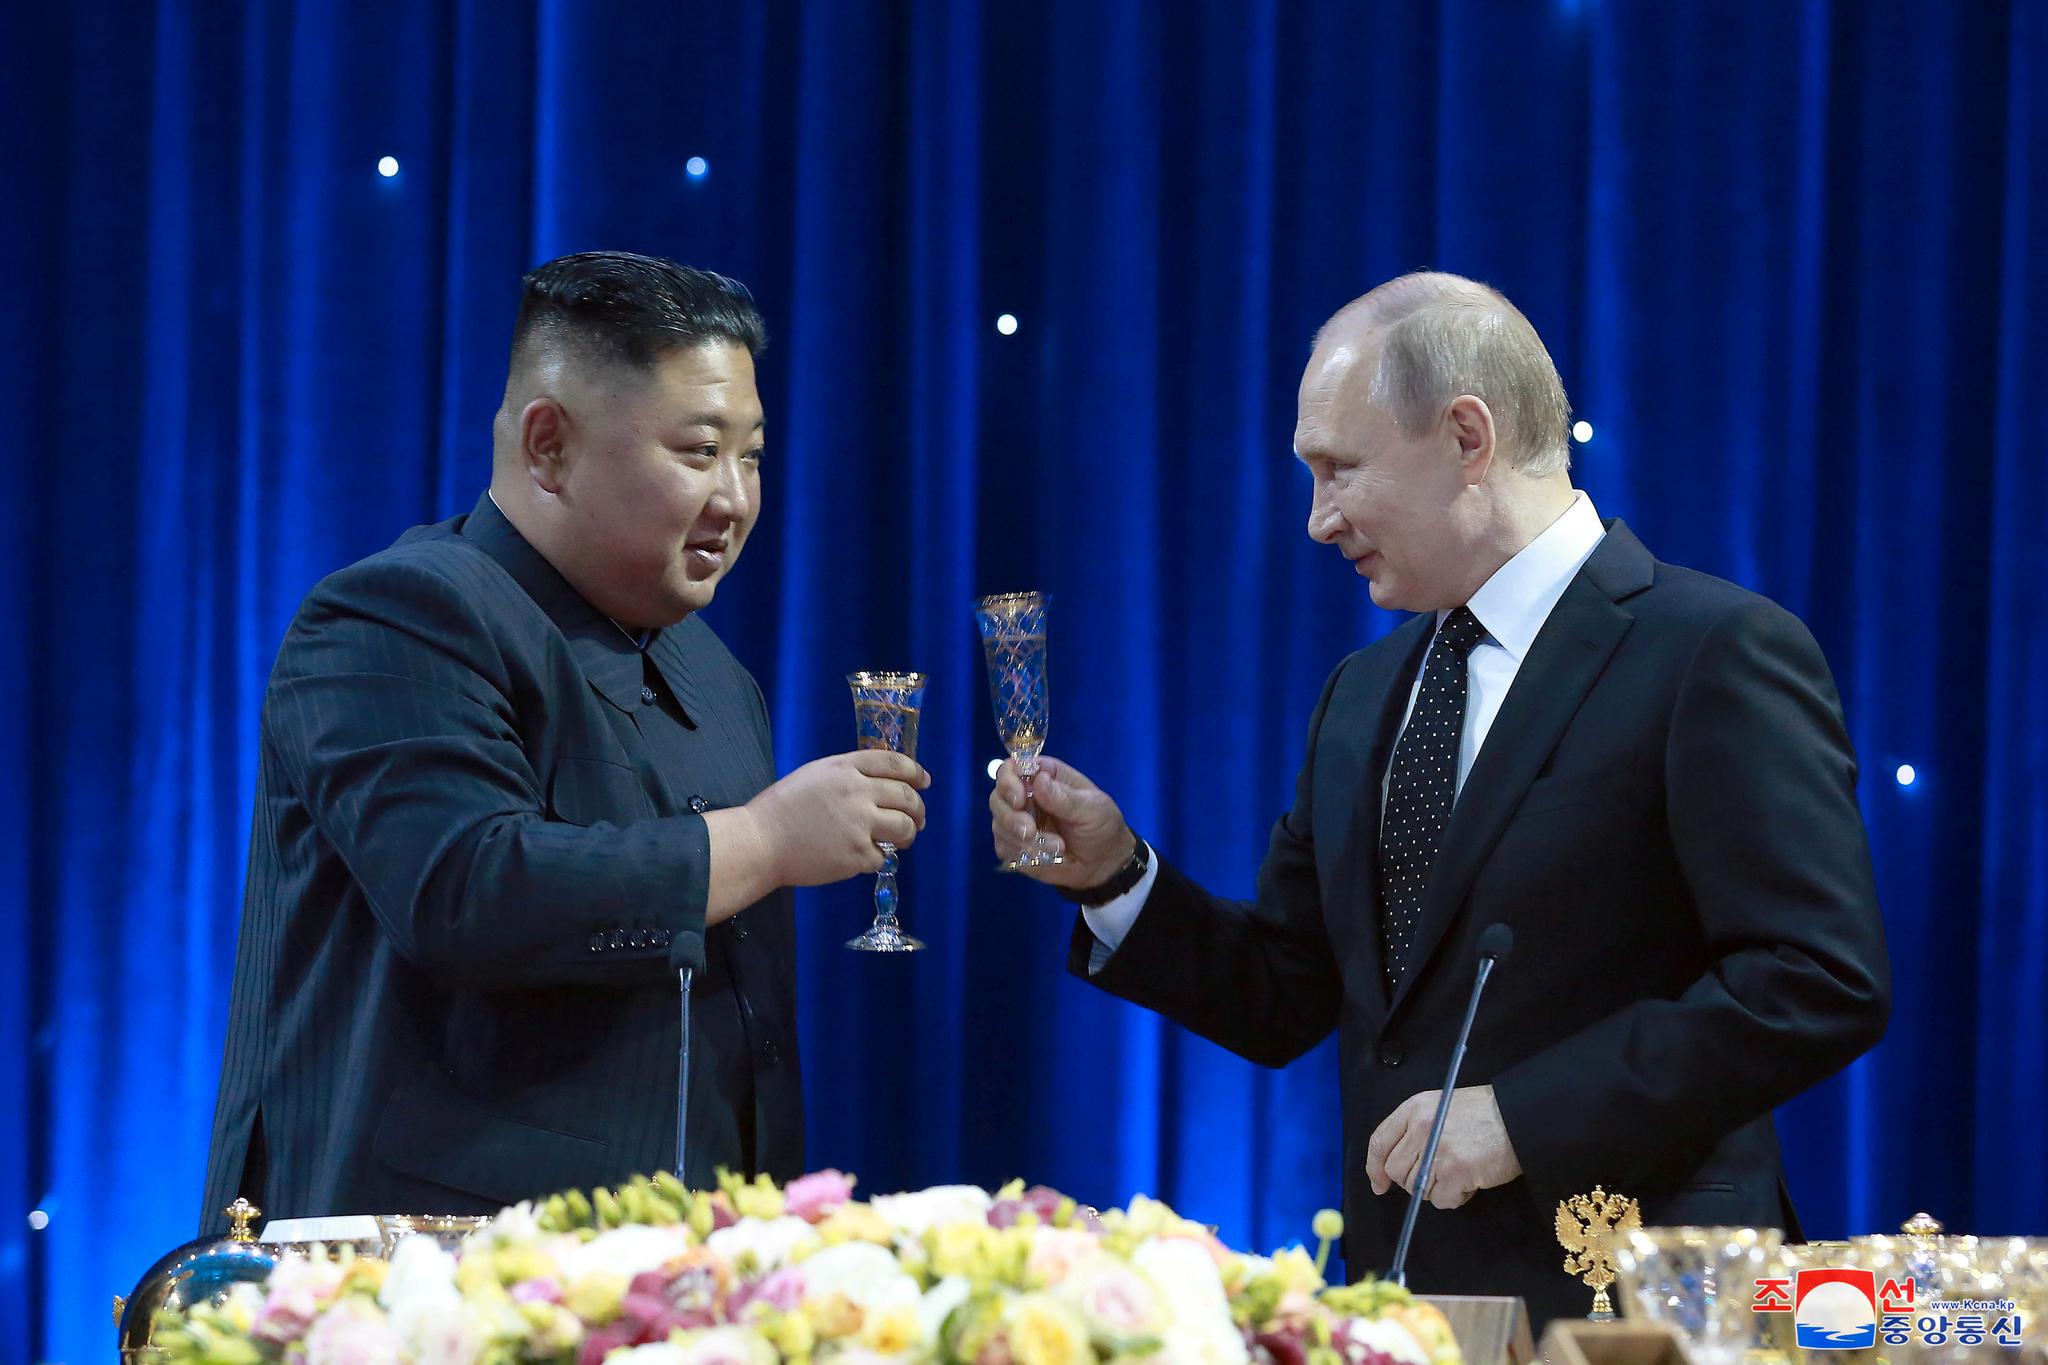 Denne ukens hjertelige rendezvous mellom diktatoren i Kreml og diktatoren i Pyongyang vakte en viss oppsikt, skriver kronikkforfatteren. Her fra et tidligere møte mellom Kim Jong-un og Vladimir Putin i 2019.